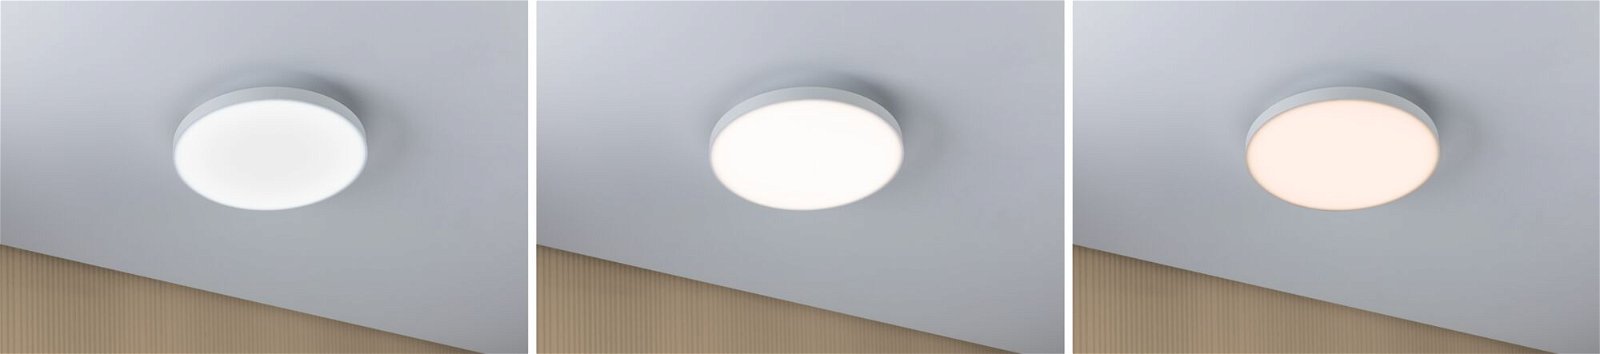 LED Panel Velora rund 300mm White Switch Weiß